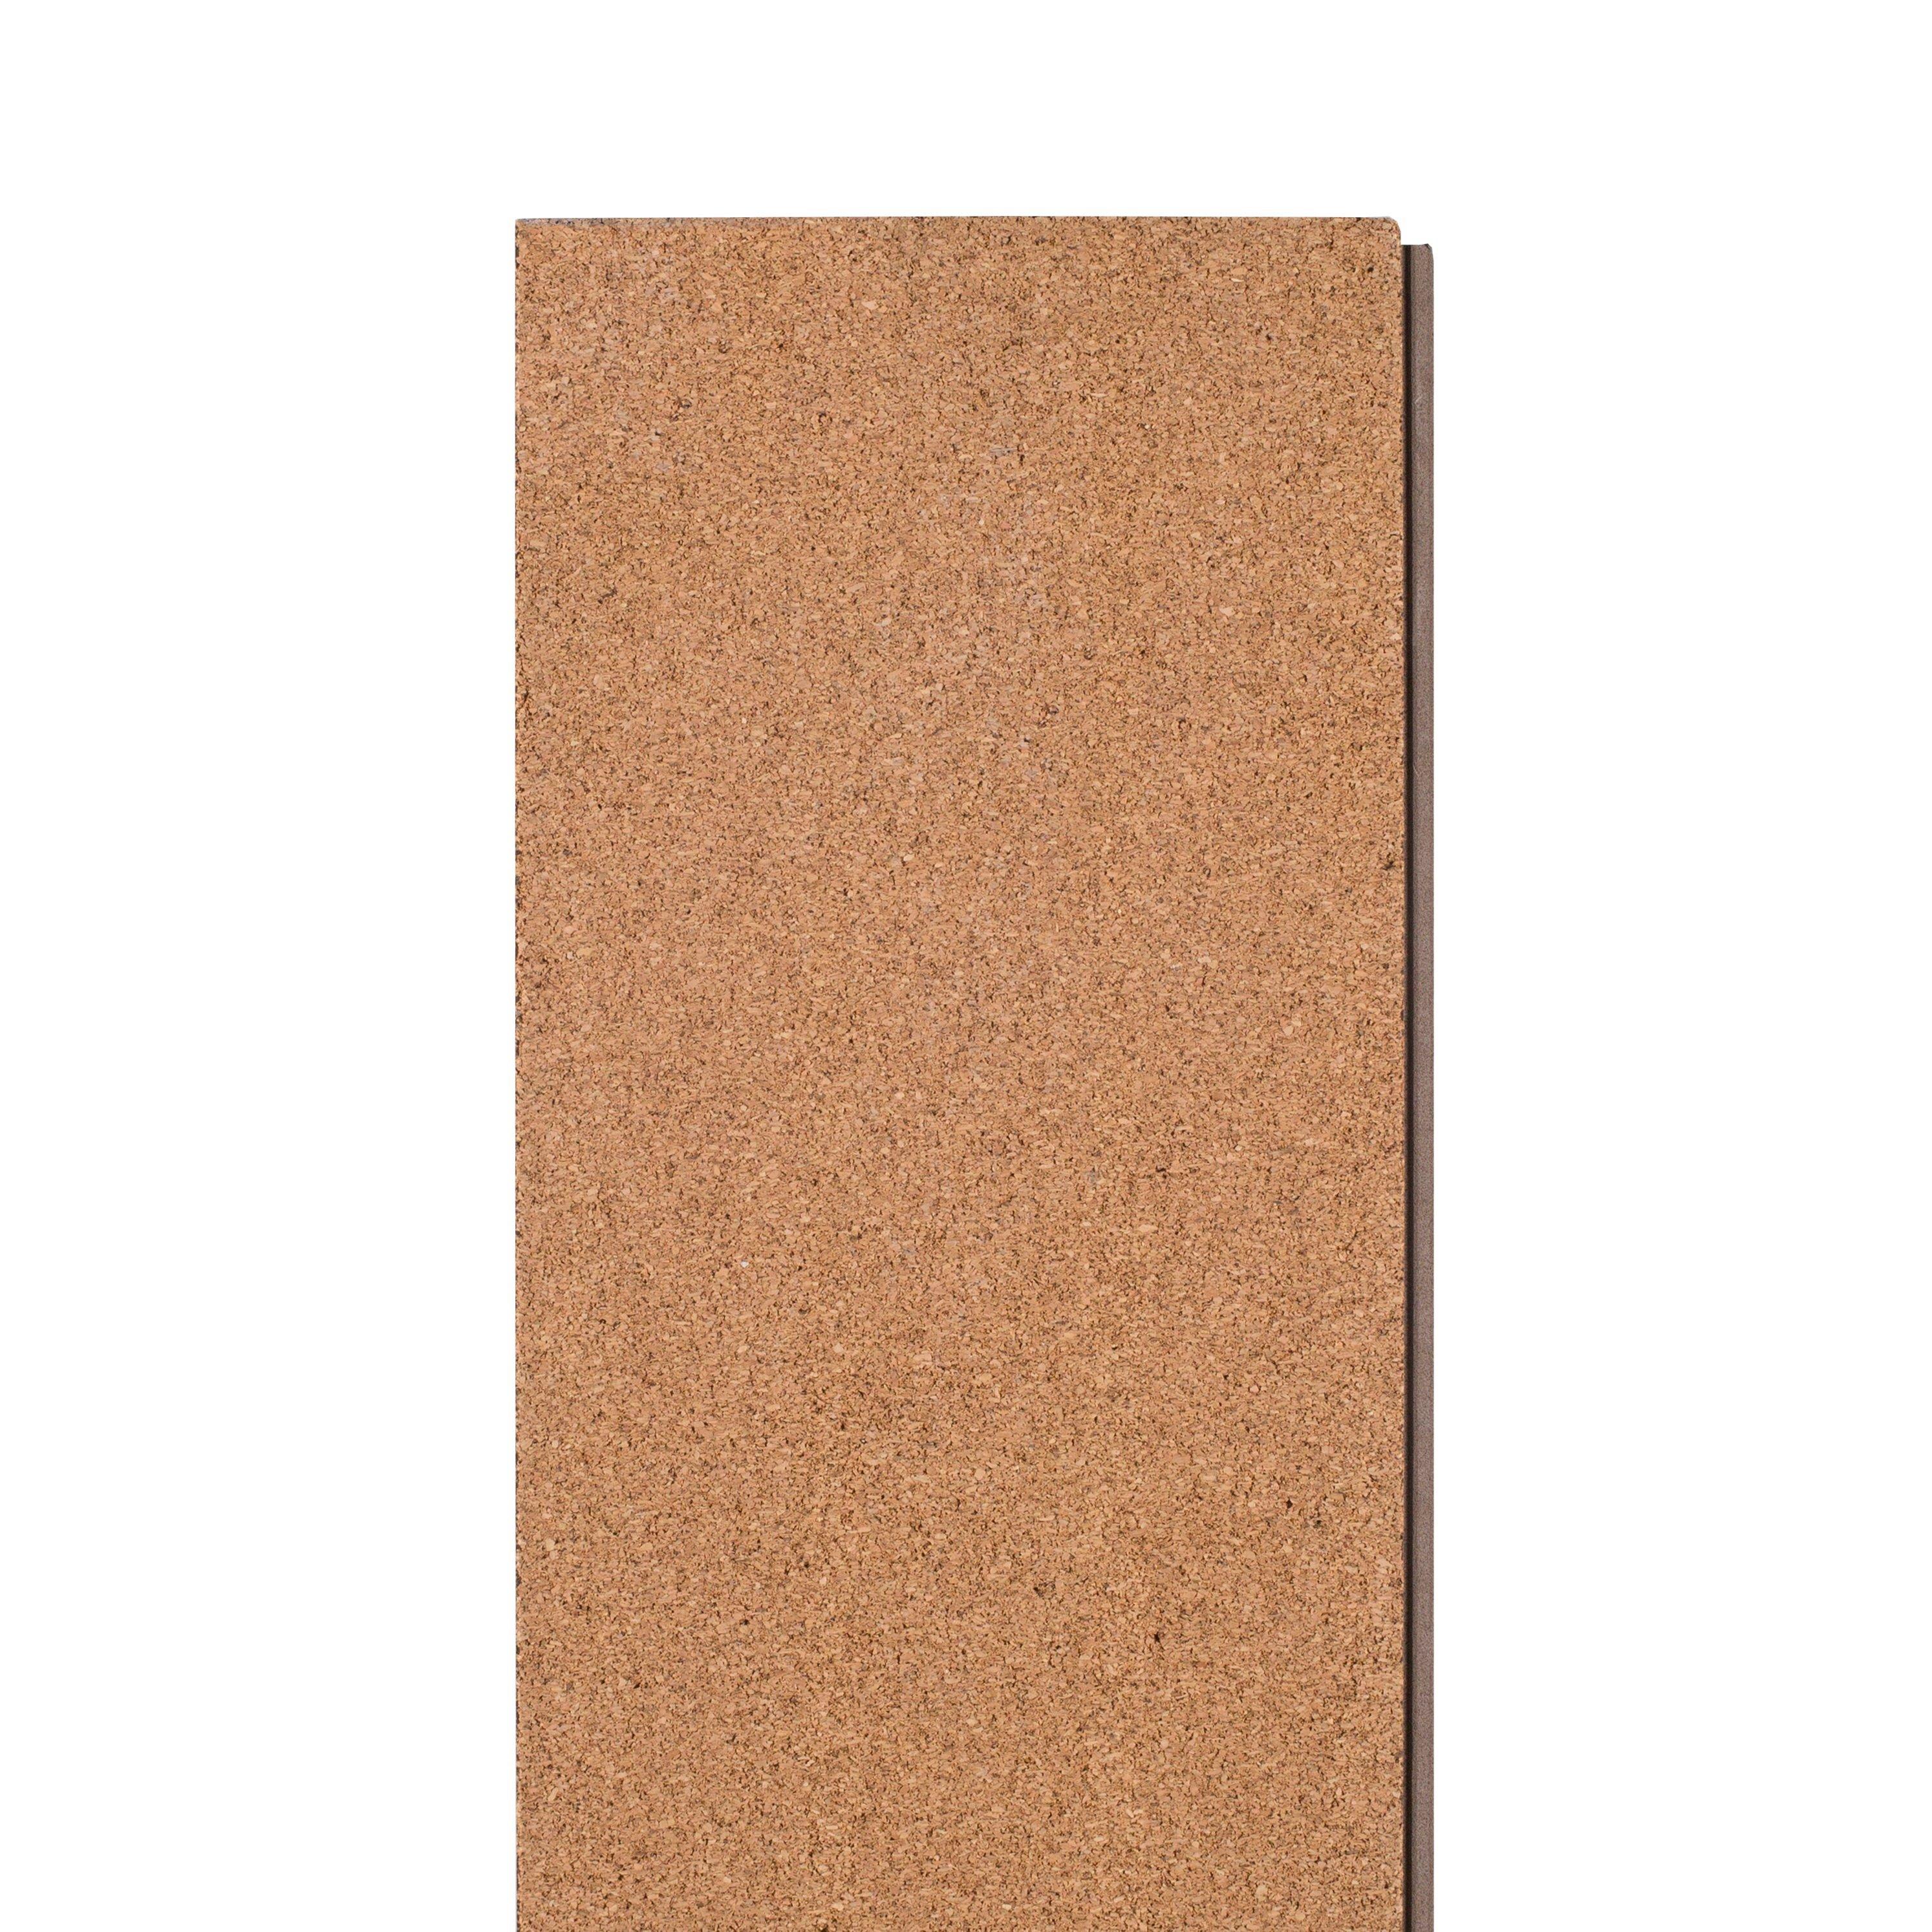 Emberglow Rigid Core Luxury Vinyl Plank - Foam Back